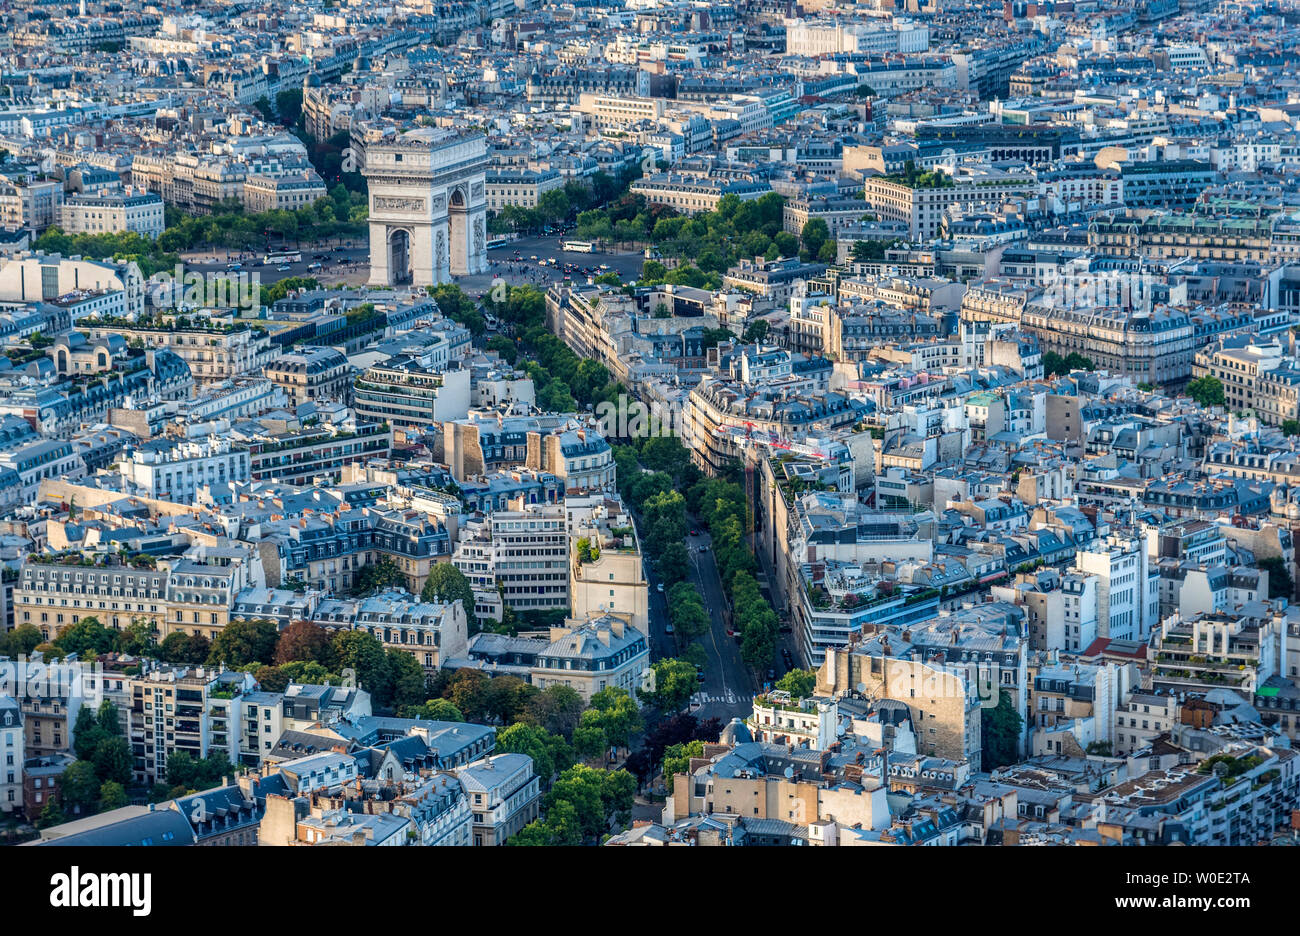 France, 16th arrondissement of Paris, view from the Eiffel Tower (Arc de Triomphe de l'Etoile, Avenue d'Iena) Stock Photo